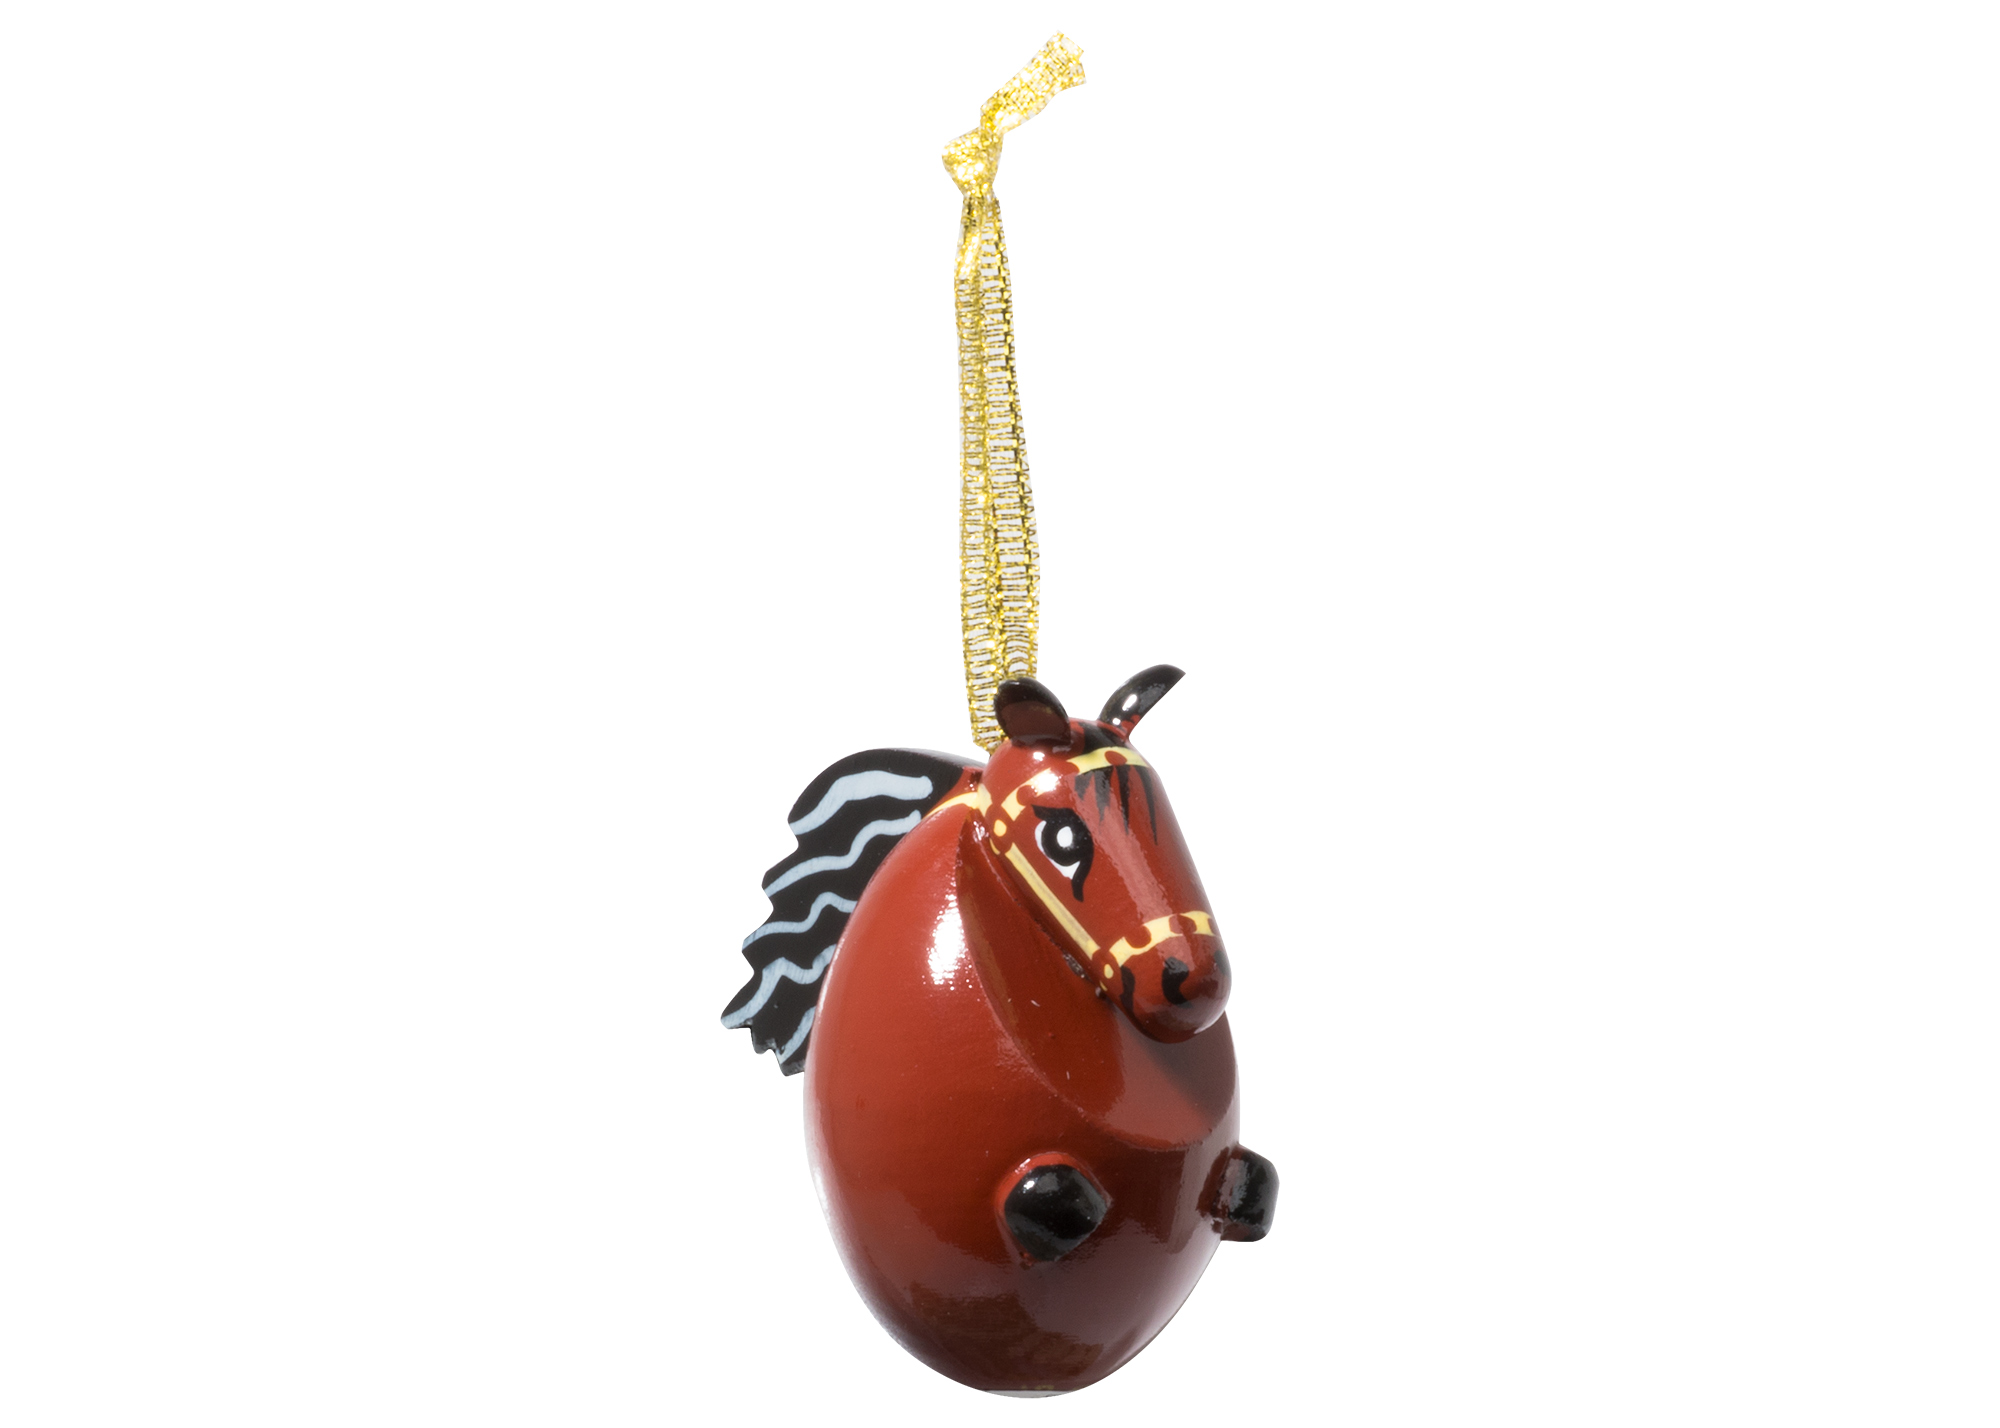 Buy Horse Ornament 2" at GoldenCockerel.com